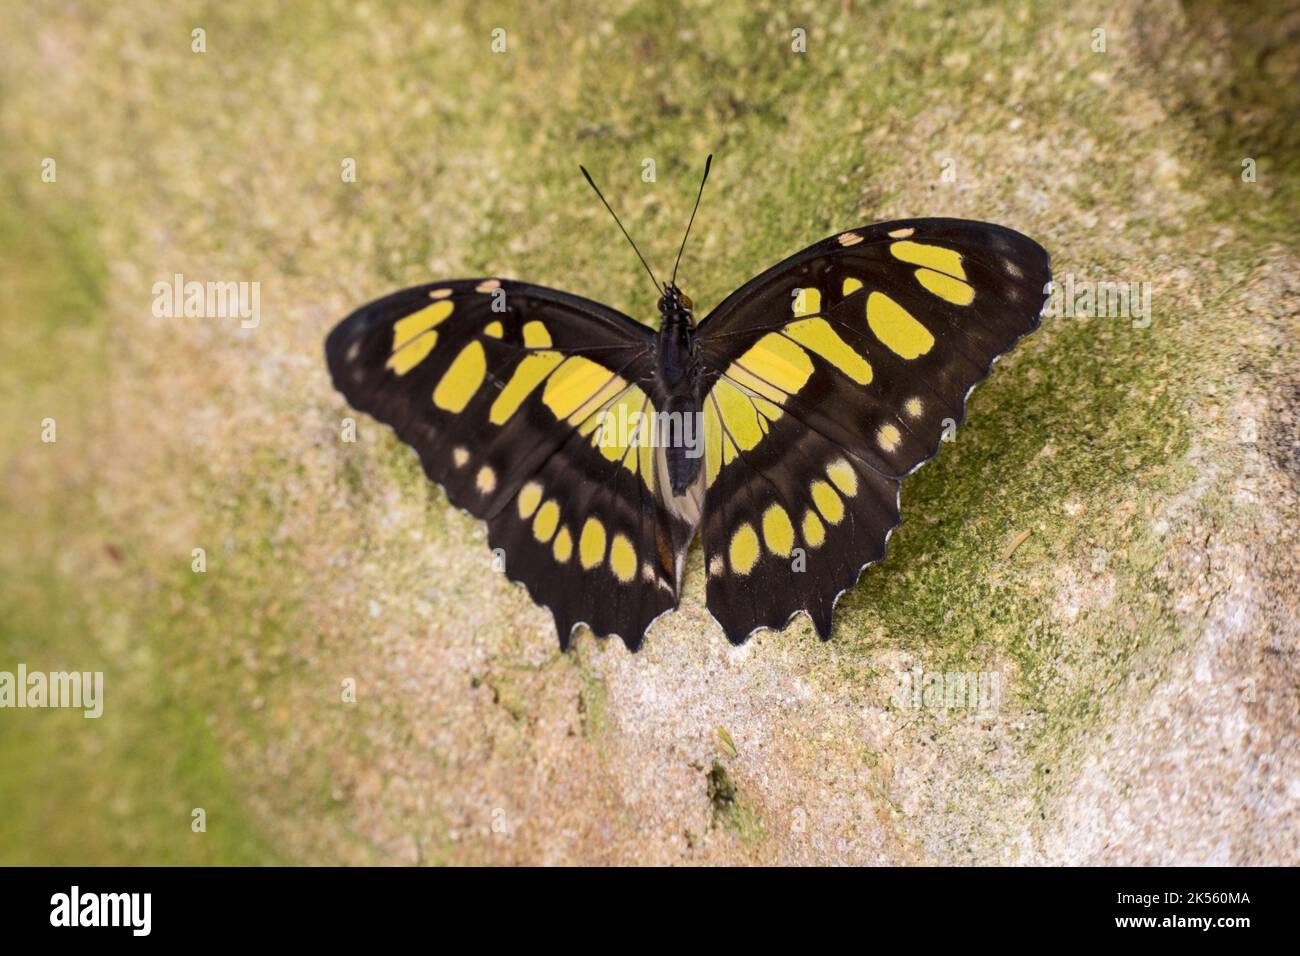 Gelber und schwarzer Malachitschmetterling Siproeta stelenes ist ein neotropischer, bürstenfüßiger Schmetterling (Familie Nymphidae) Stockfoto